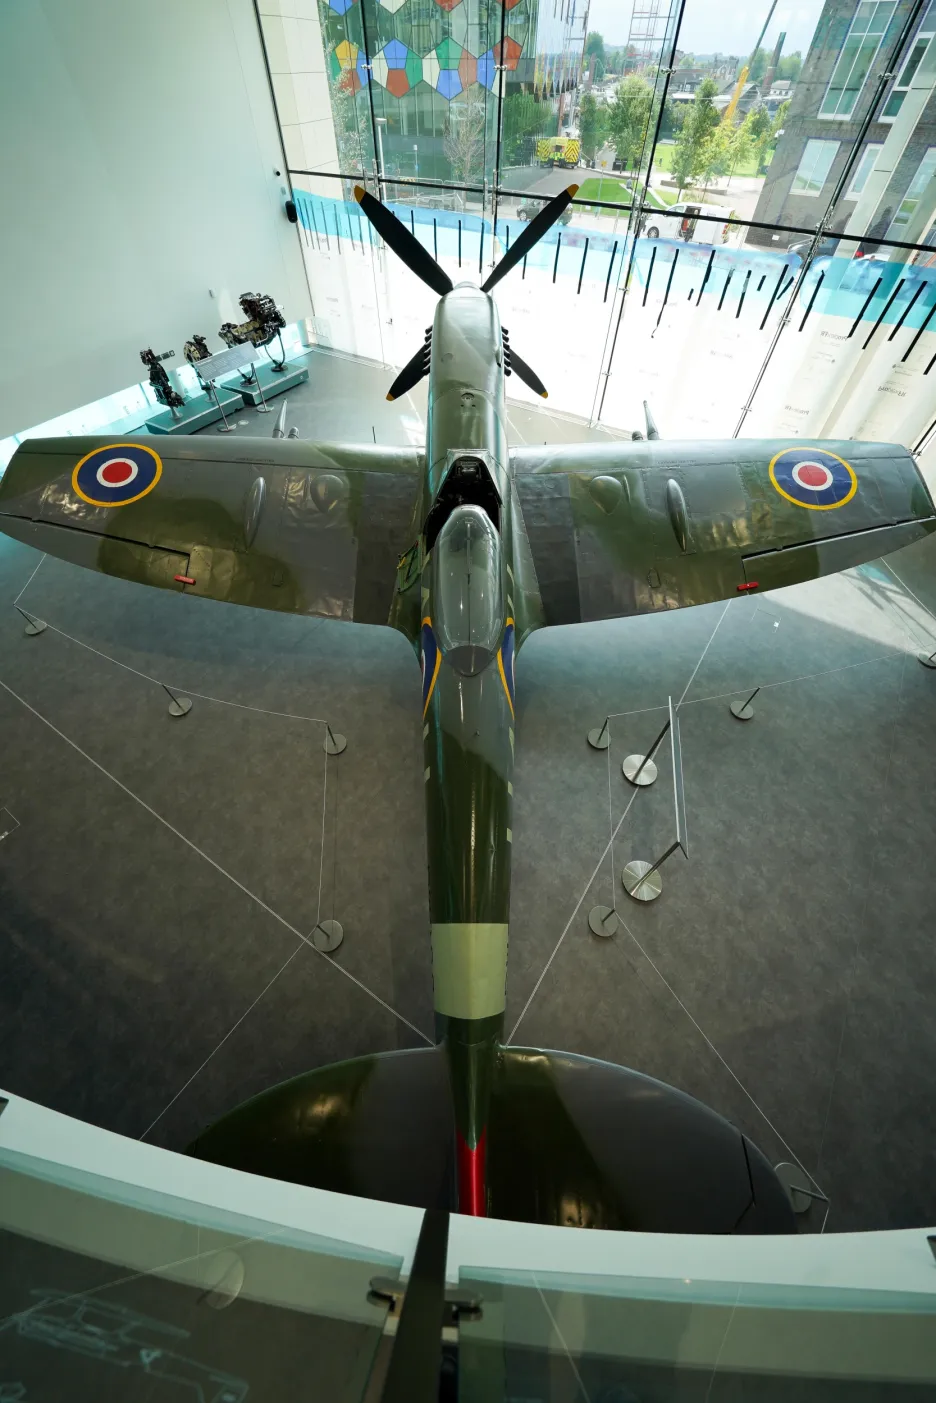 Britský válečný veterán Norman Lewise pokřtil zrekonstruované letadlo Spitfire v Muzeu a galerie umění Potteries v anglickém městě Stoke-on-Trent